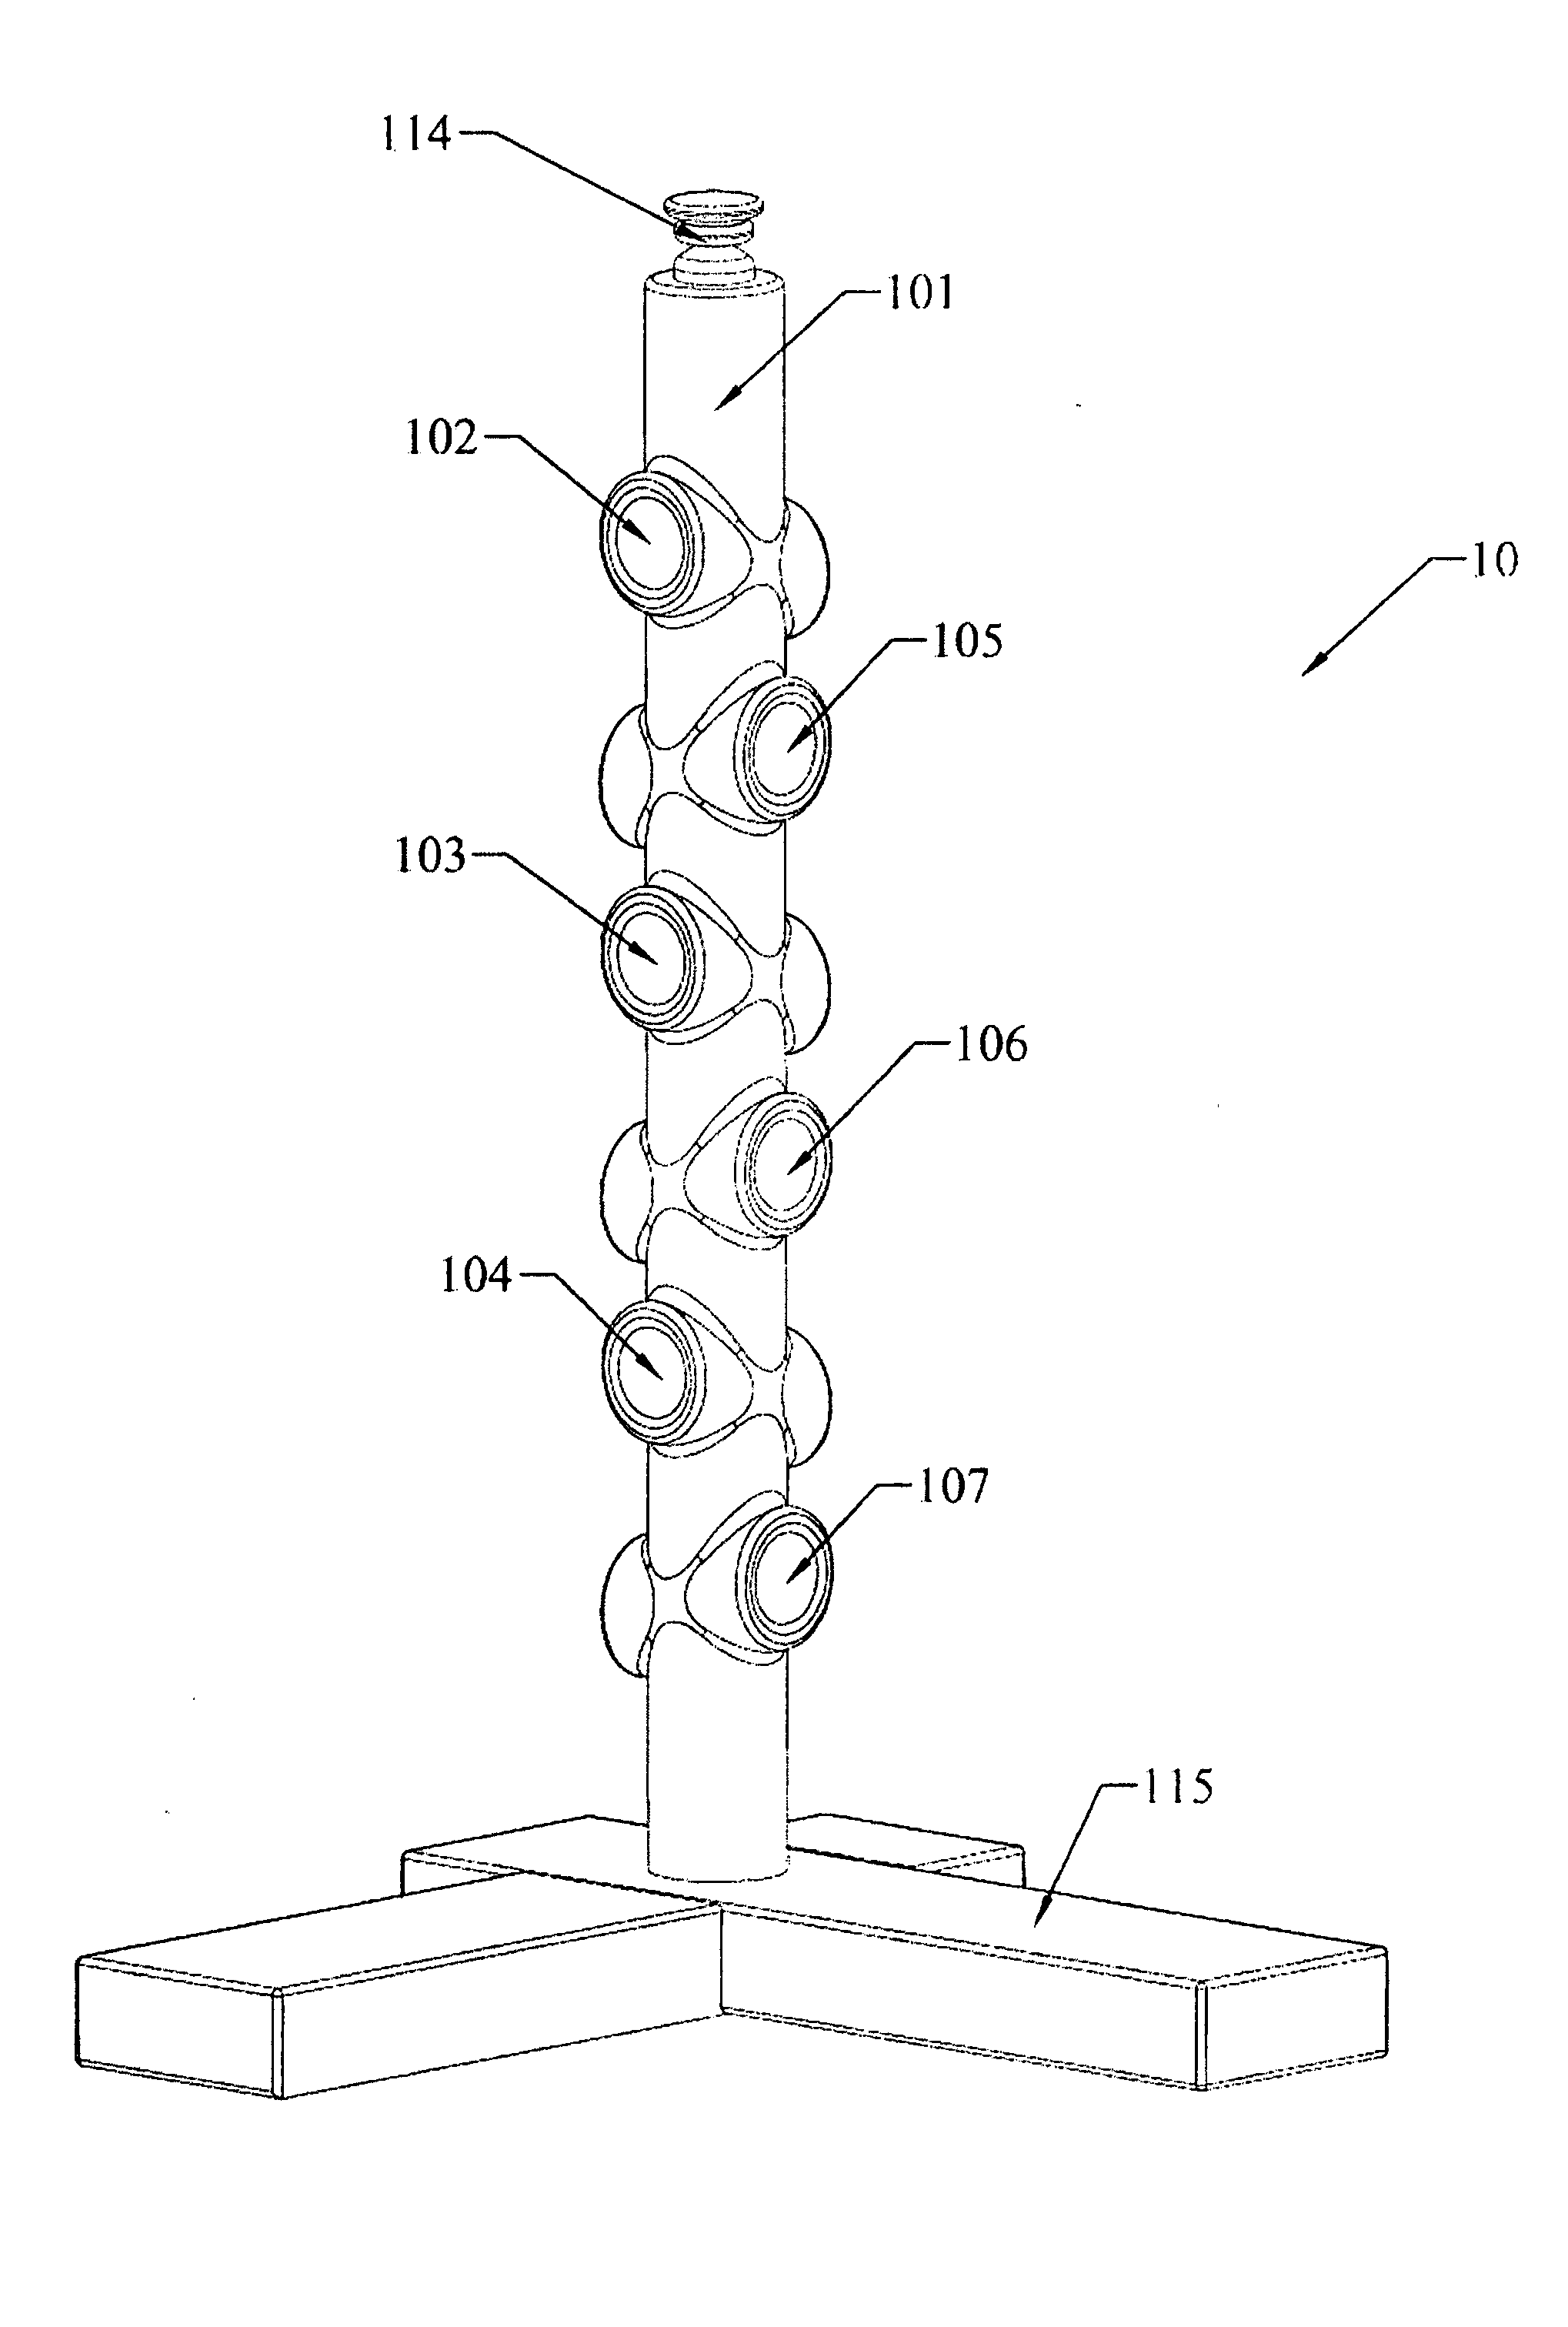 Three-dimension array structure of surround-sound speaker